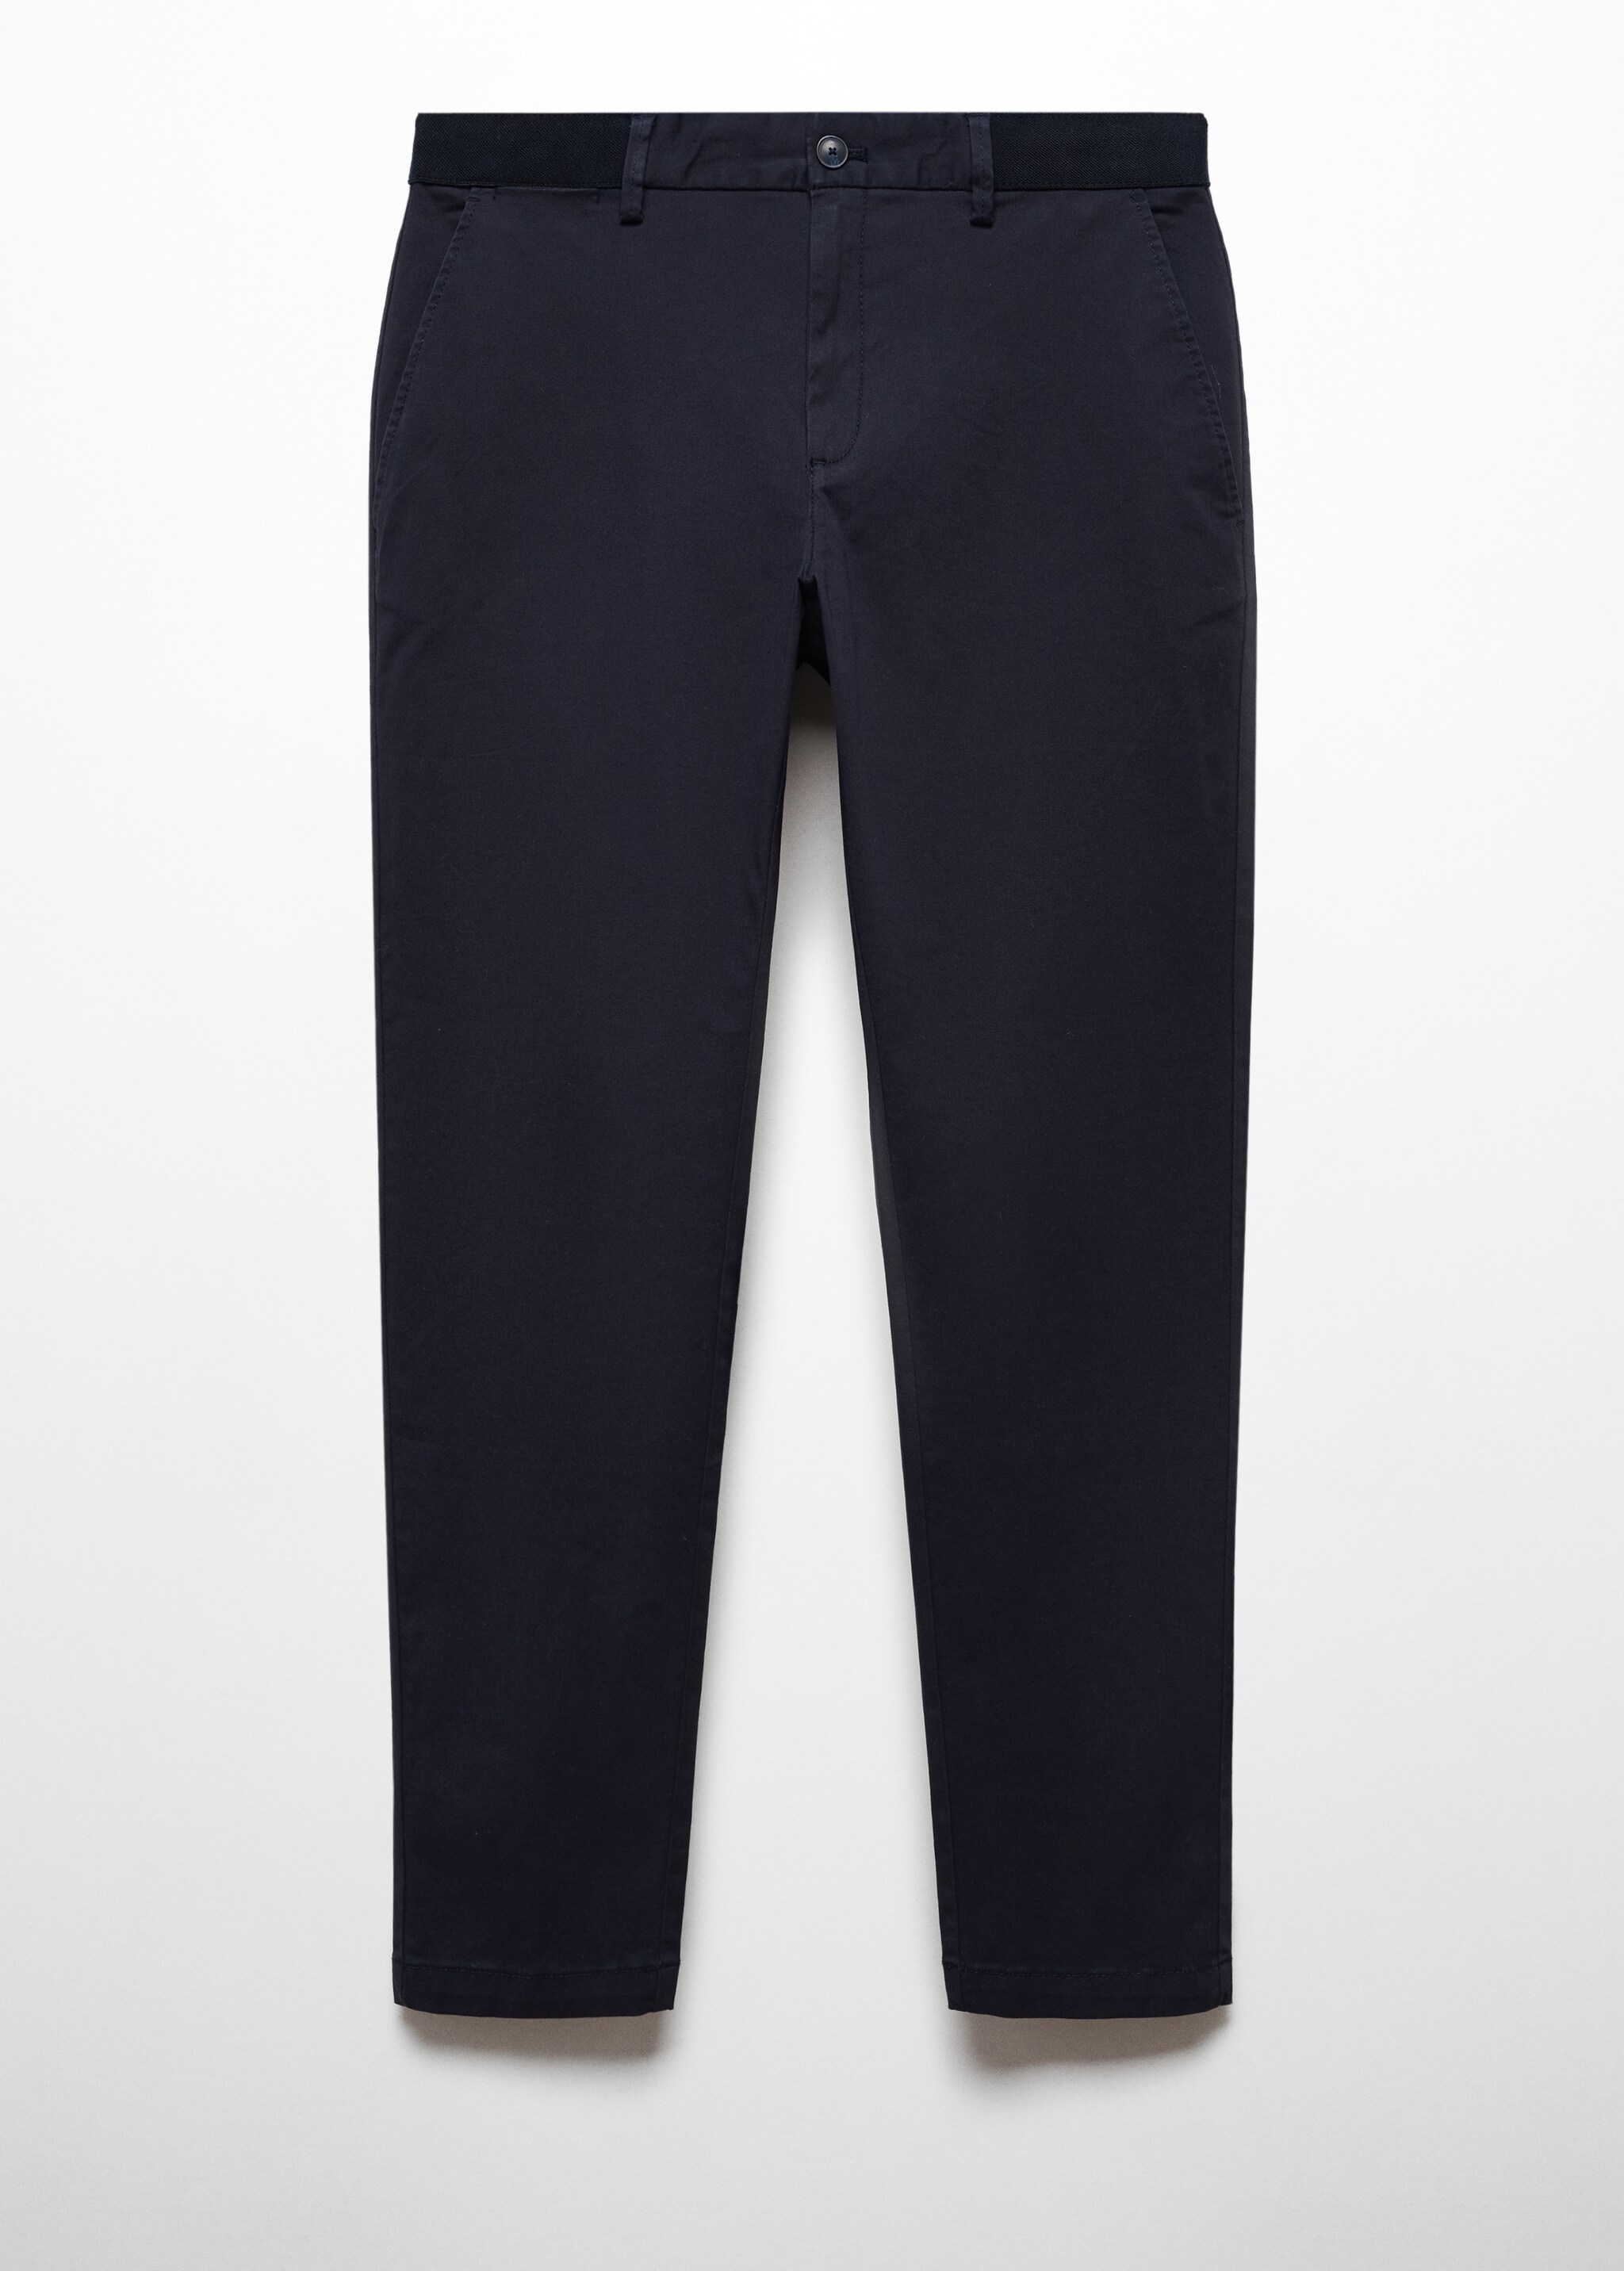 Pantaloni cotone tapered crop - Articolo senza modello